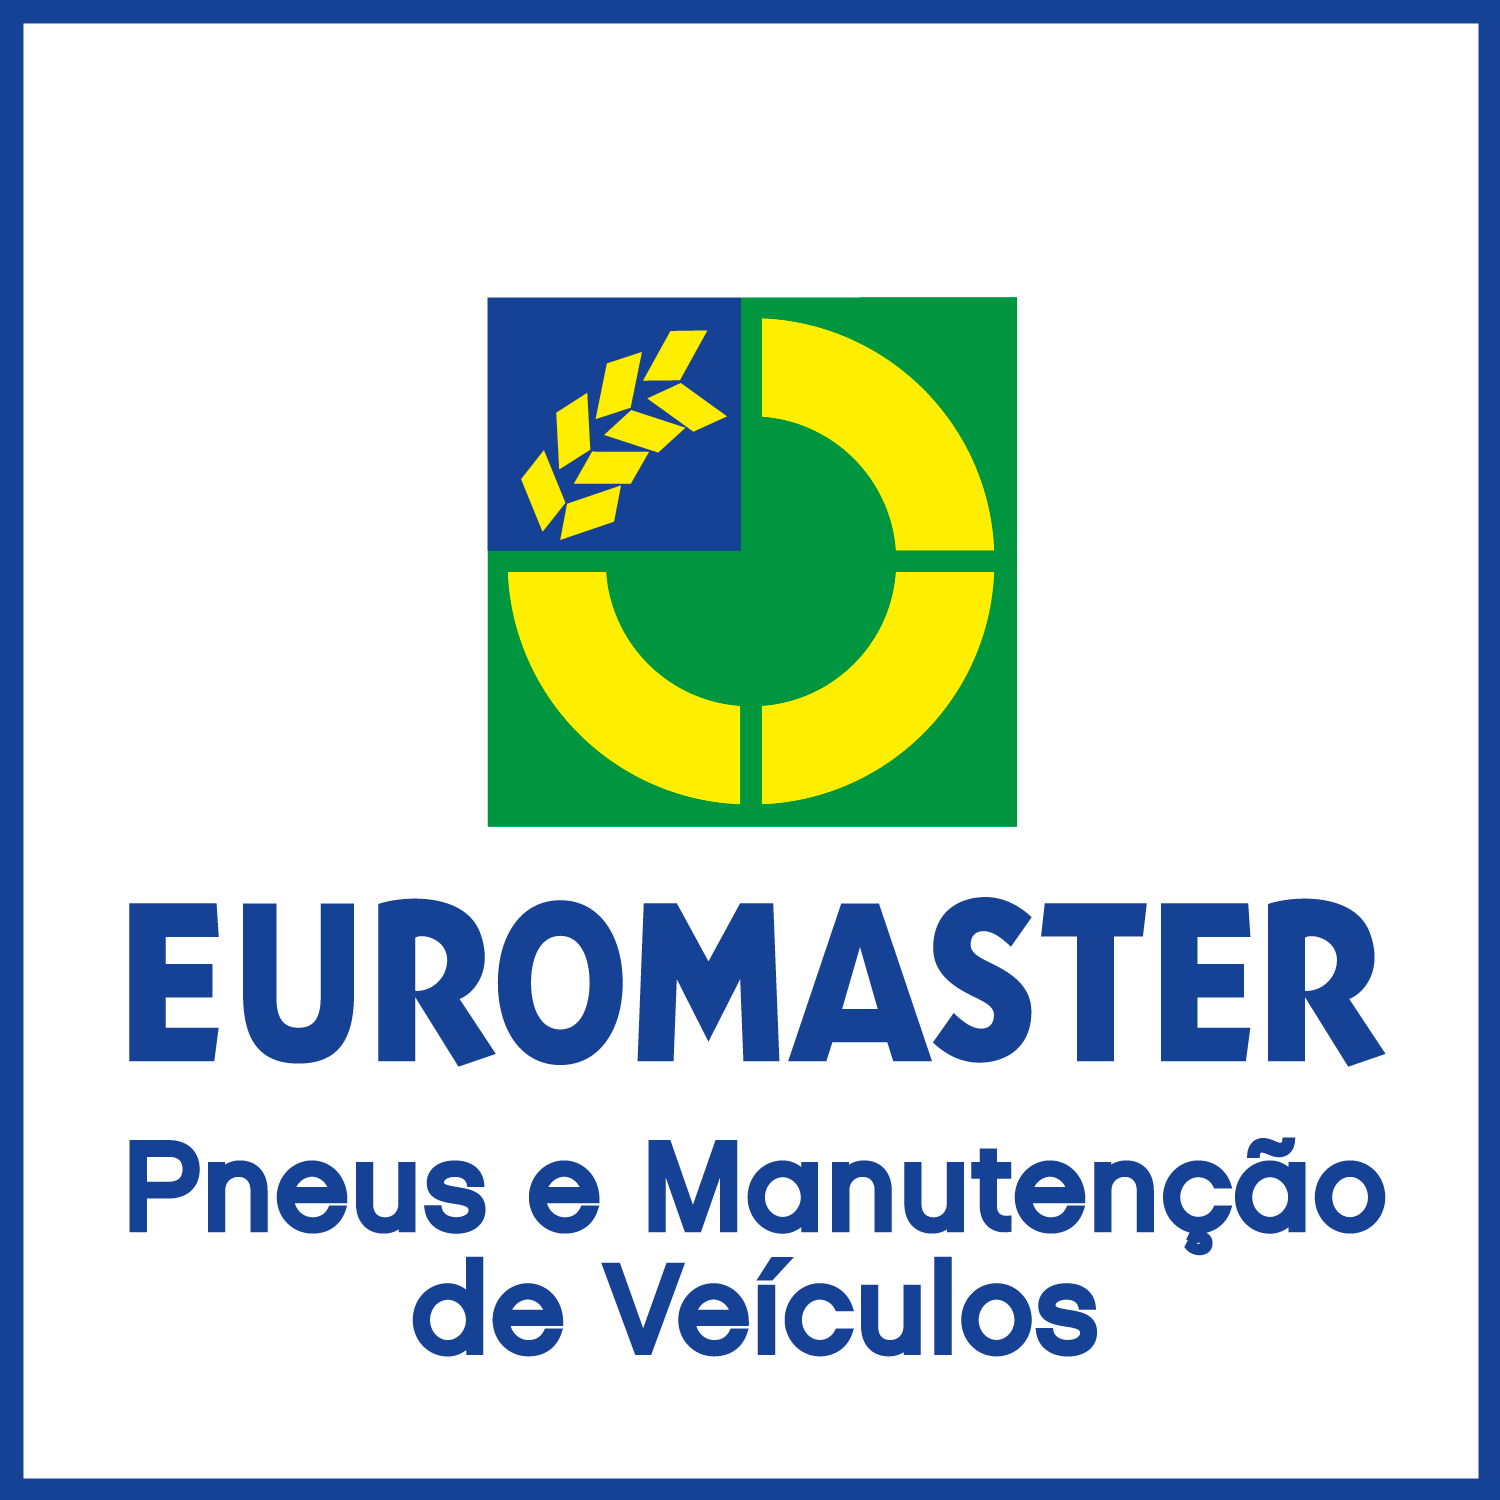 Euromaster Pneucar